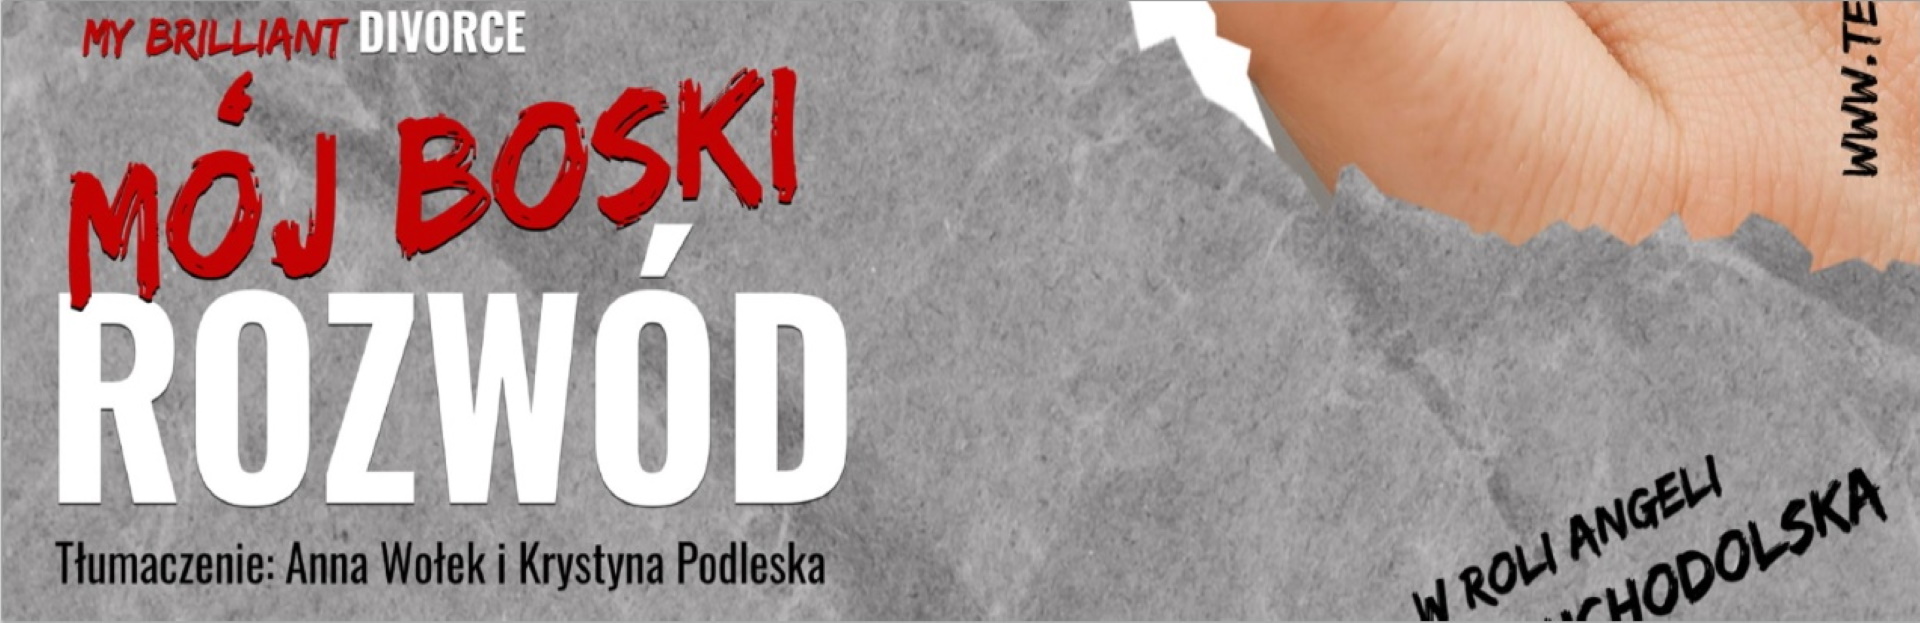 Plakat graficzny zapraszający do Elbląga na spektakl teatralny “Mój boski rozwód”.